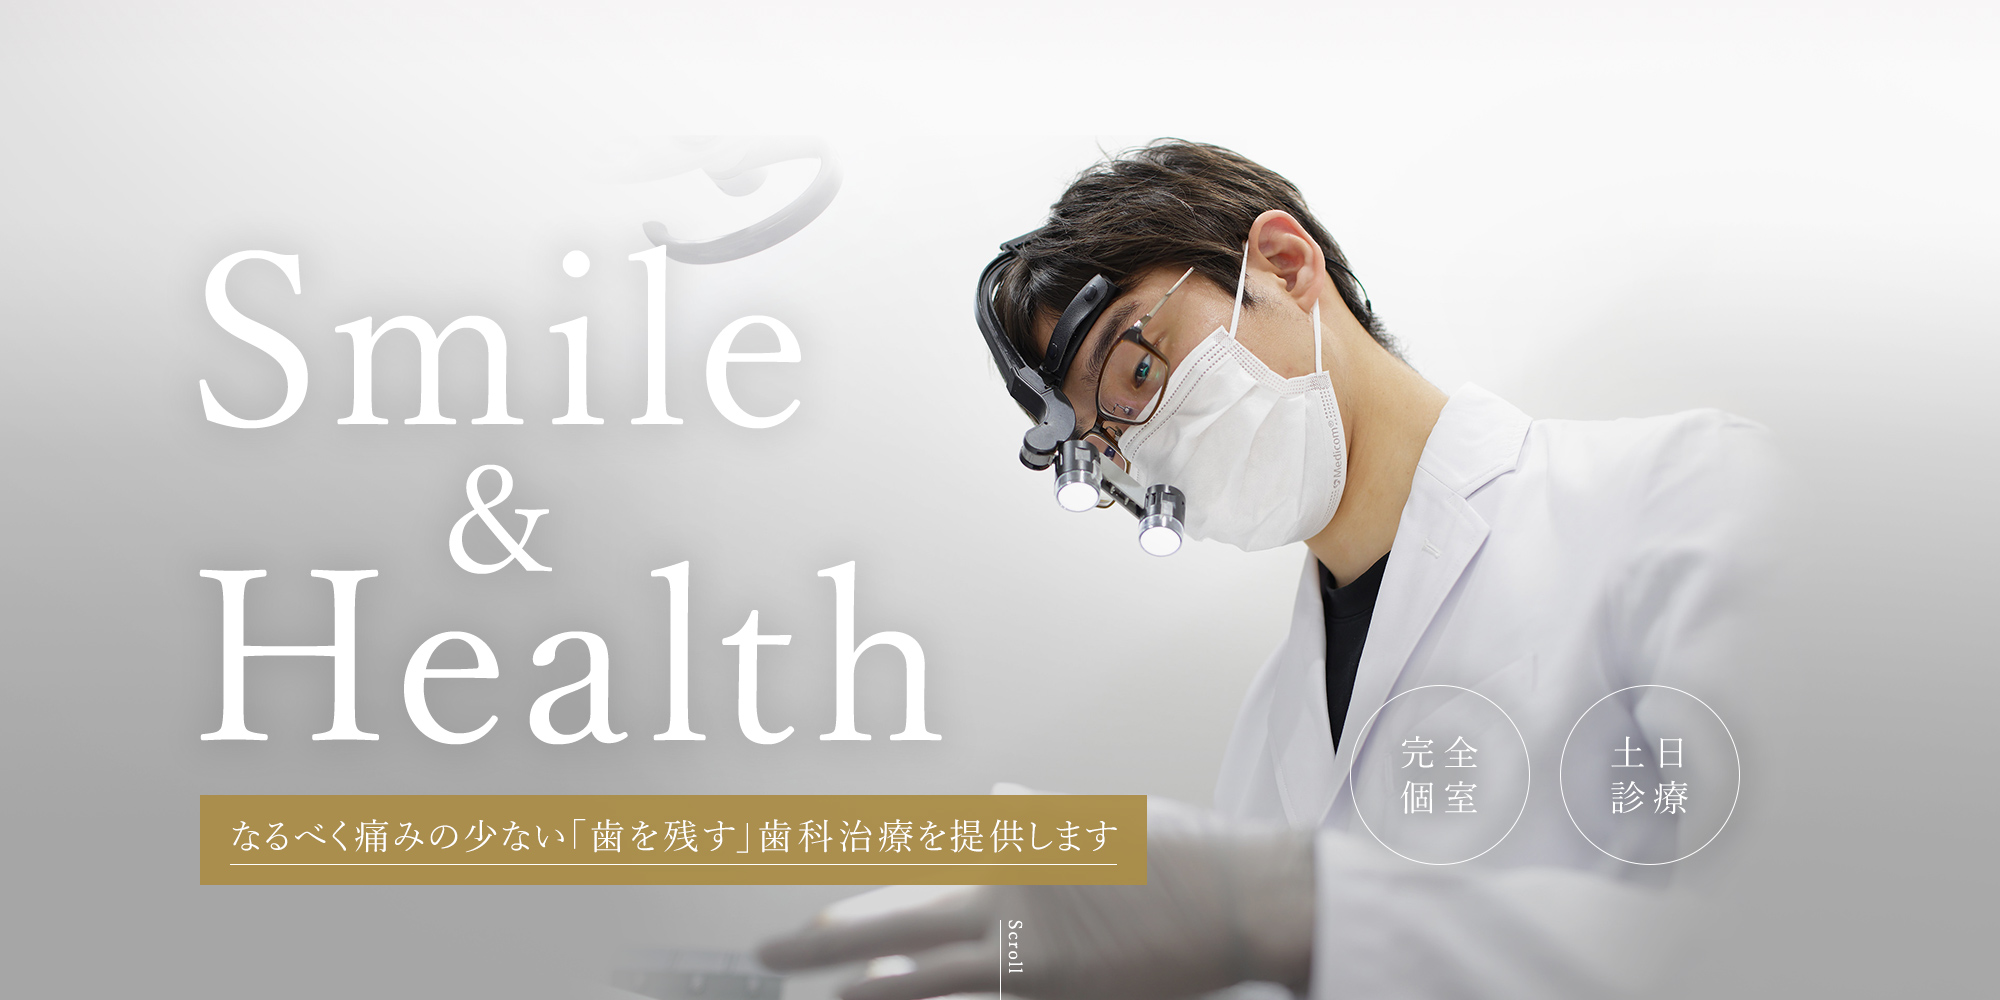 Smile&Health なるべく痛みの少ない「歯を残す」歯科治療を提供します